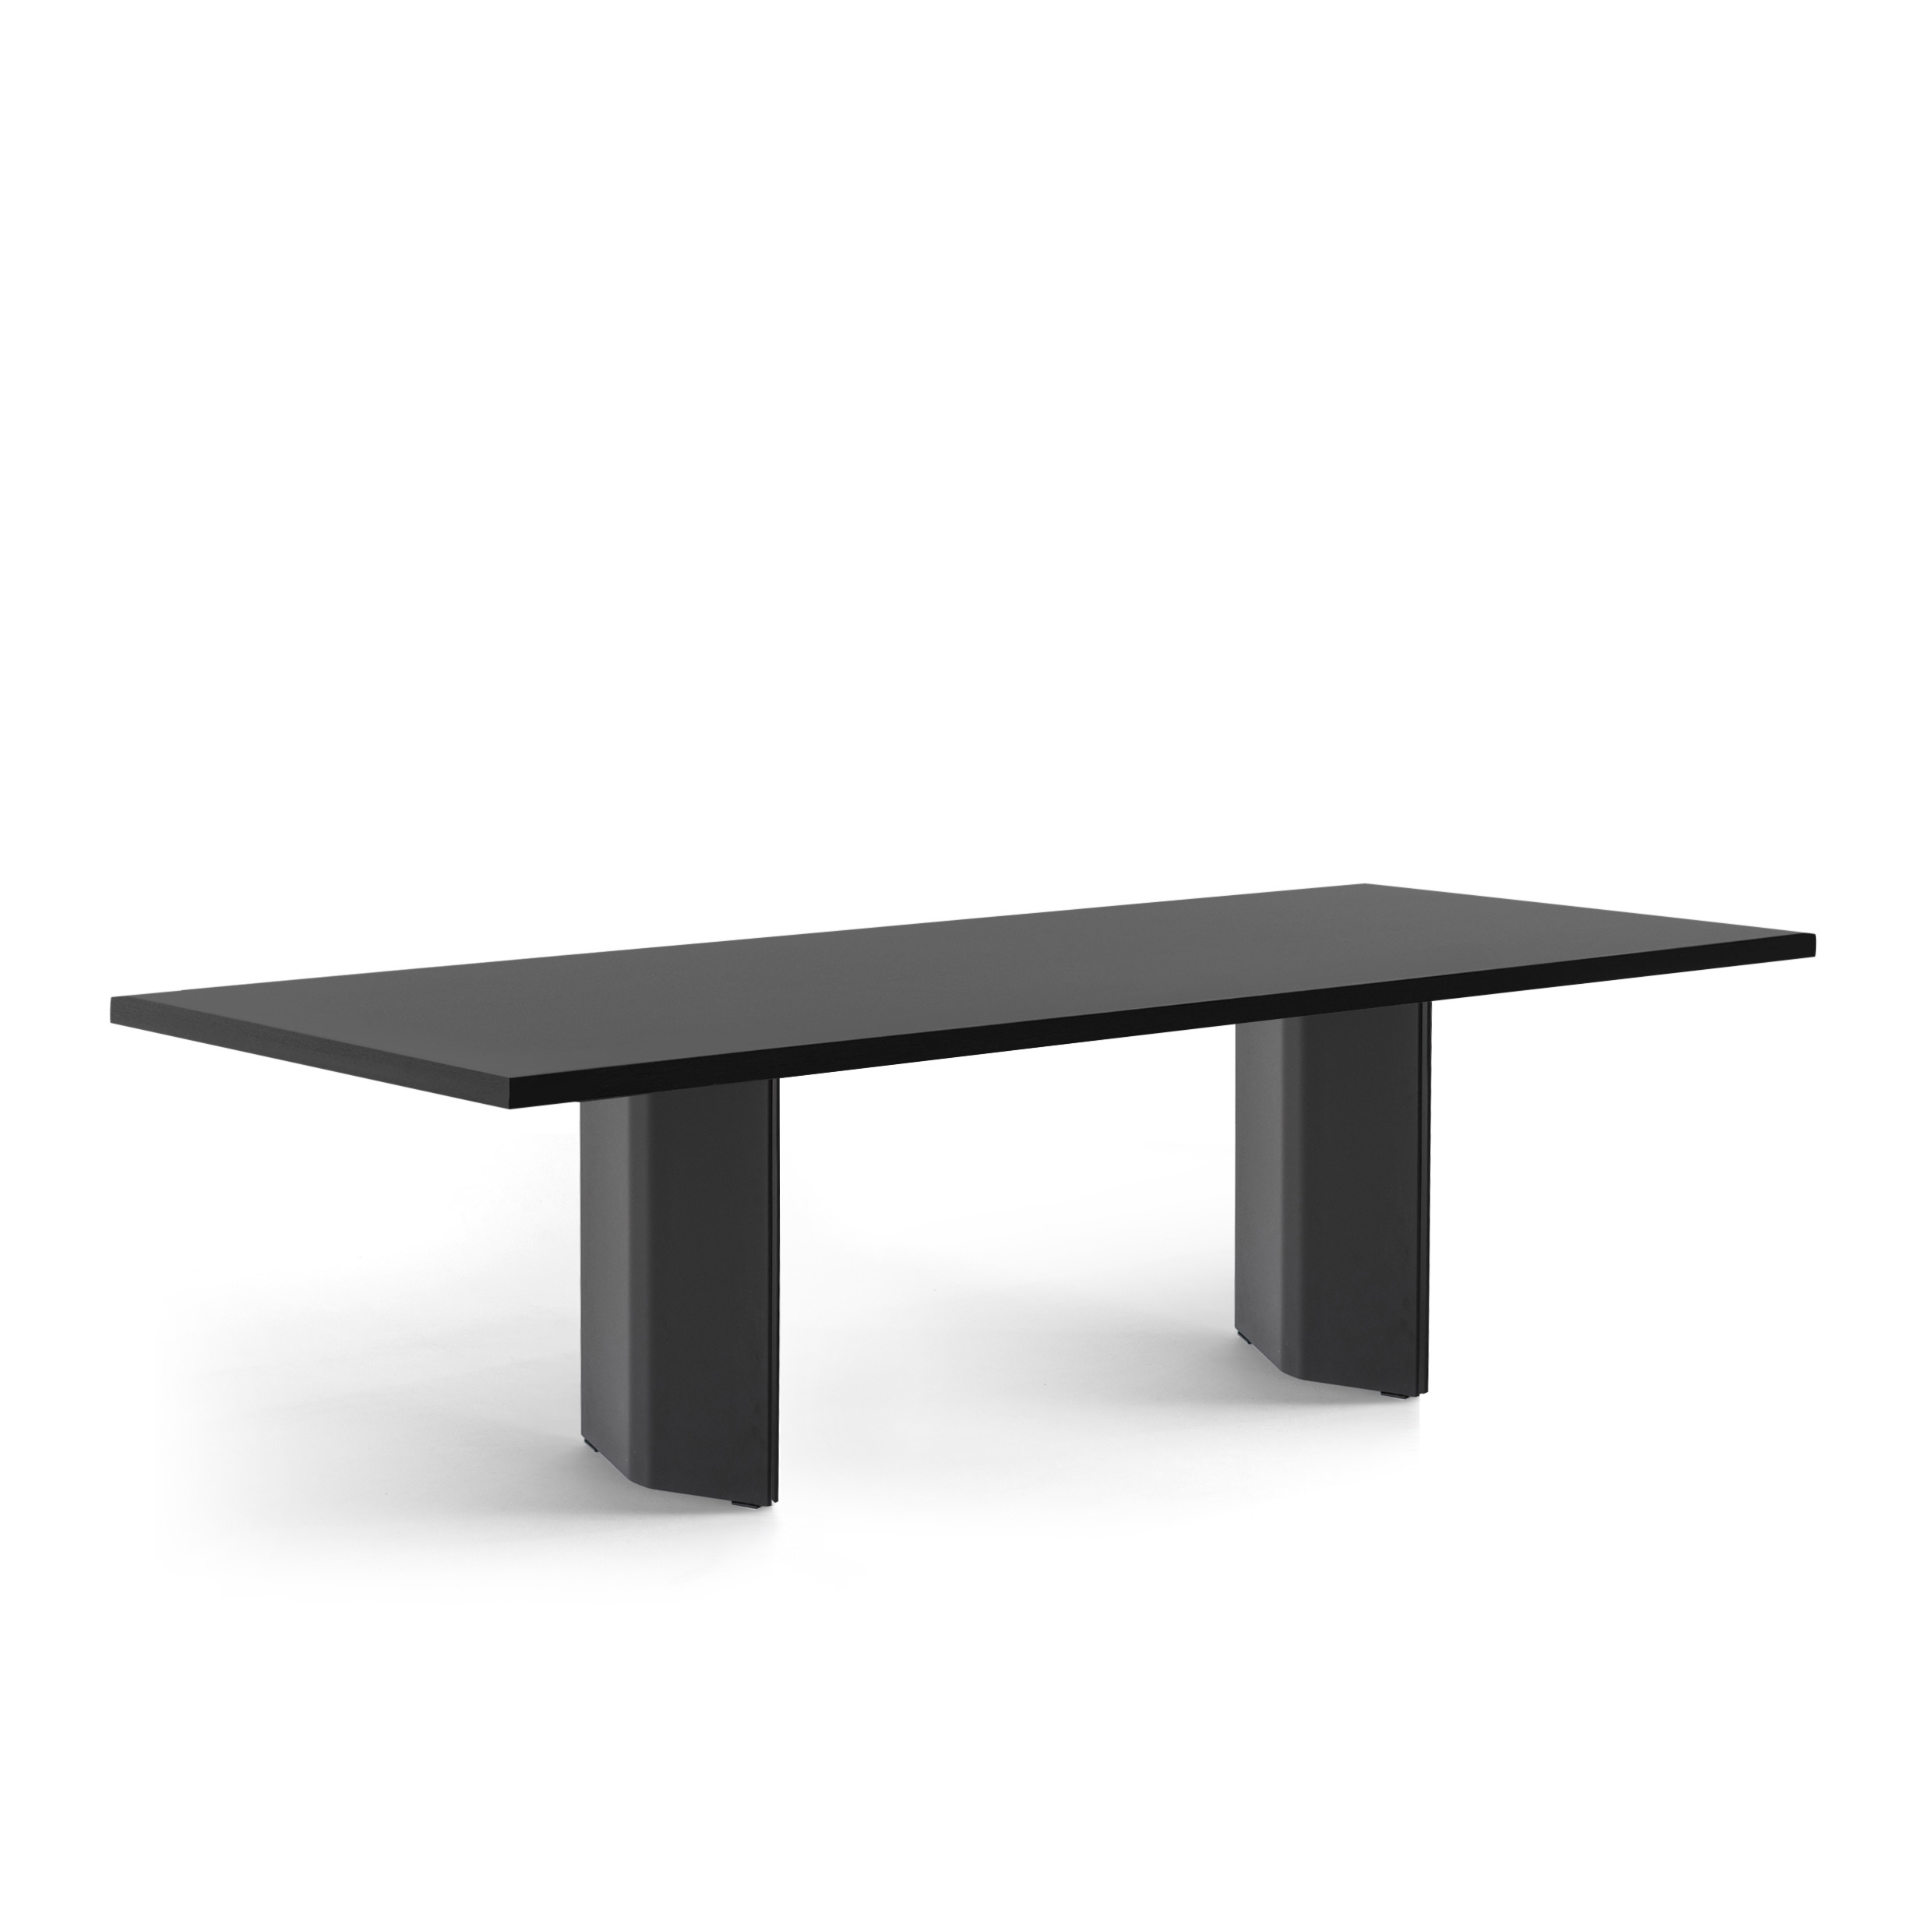 FORM EXCLUSIVE // KUNO - TABLE | FENIX | BLACK - DOUBLE BLACK - BLACK - 260CM X 100CM X 4CM